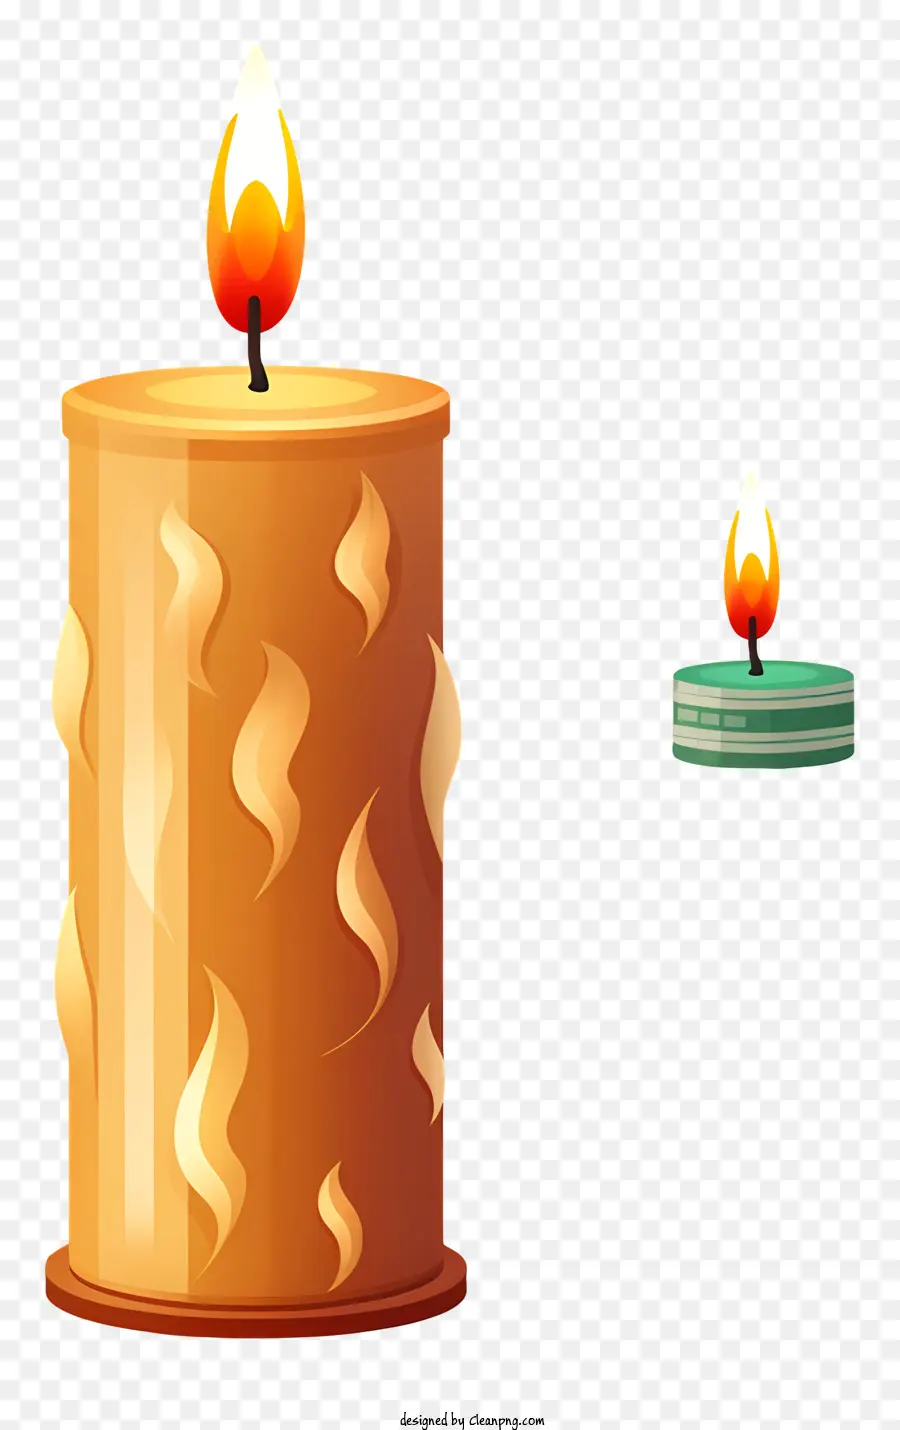 Lit nến nhấp nháy ngọn lửa bằng gỗ nến ấm màu vàng màu vàng mát lạnh - Lit nến với ngọn lửa nhấp nháy trong 3D